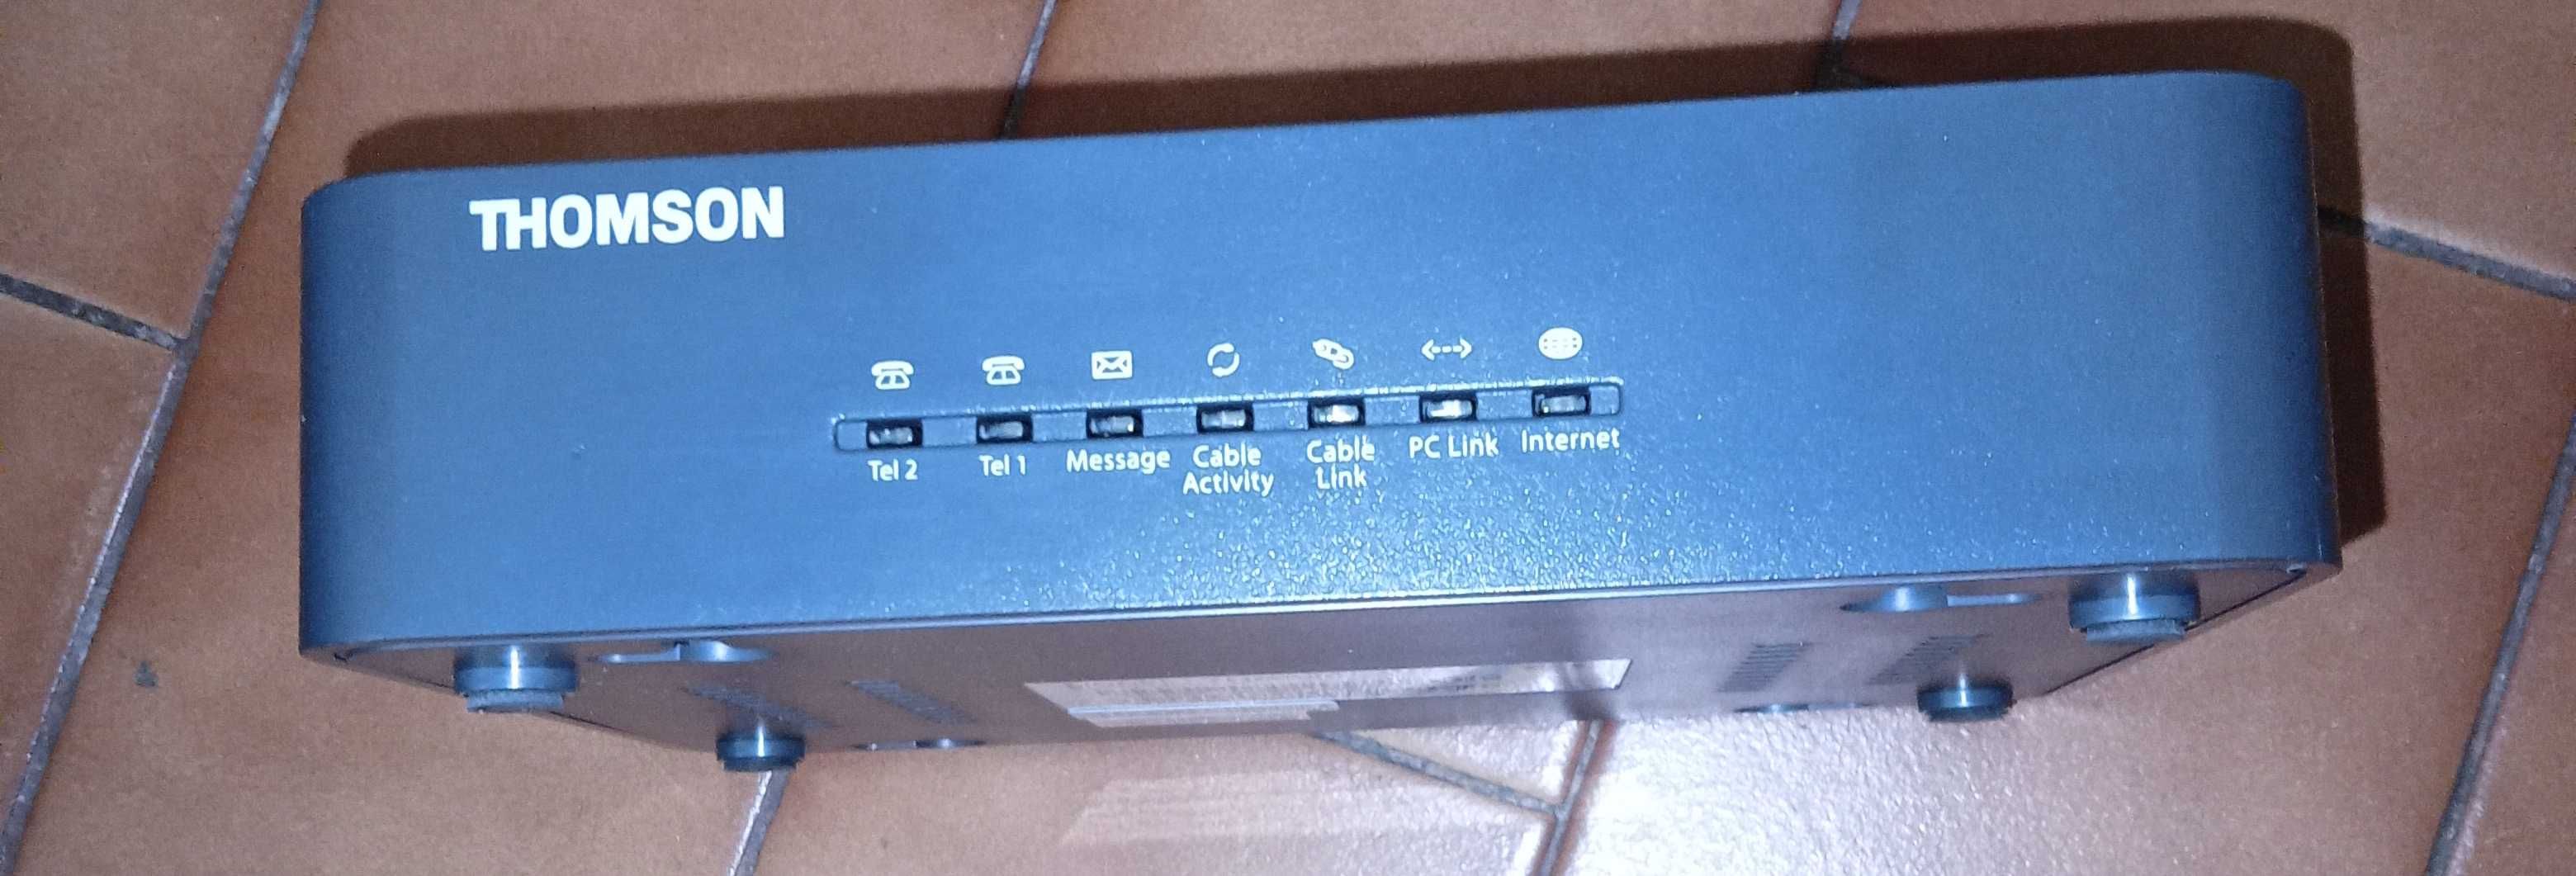 Router - Tv/Net  Thomson  THG520